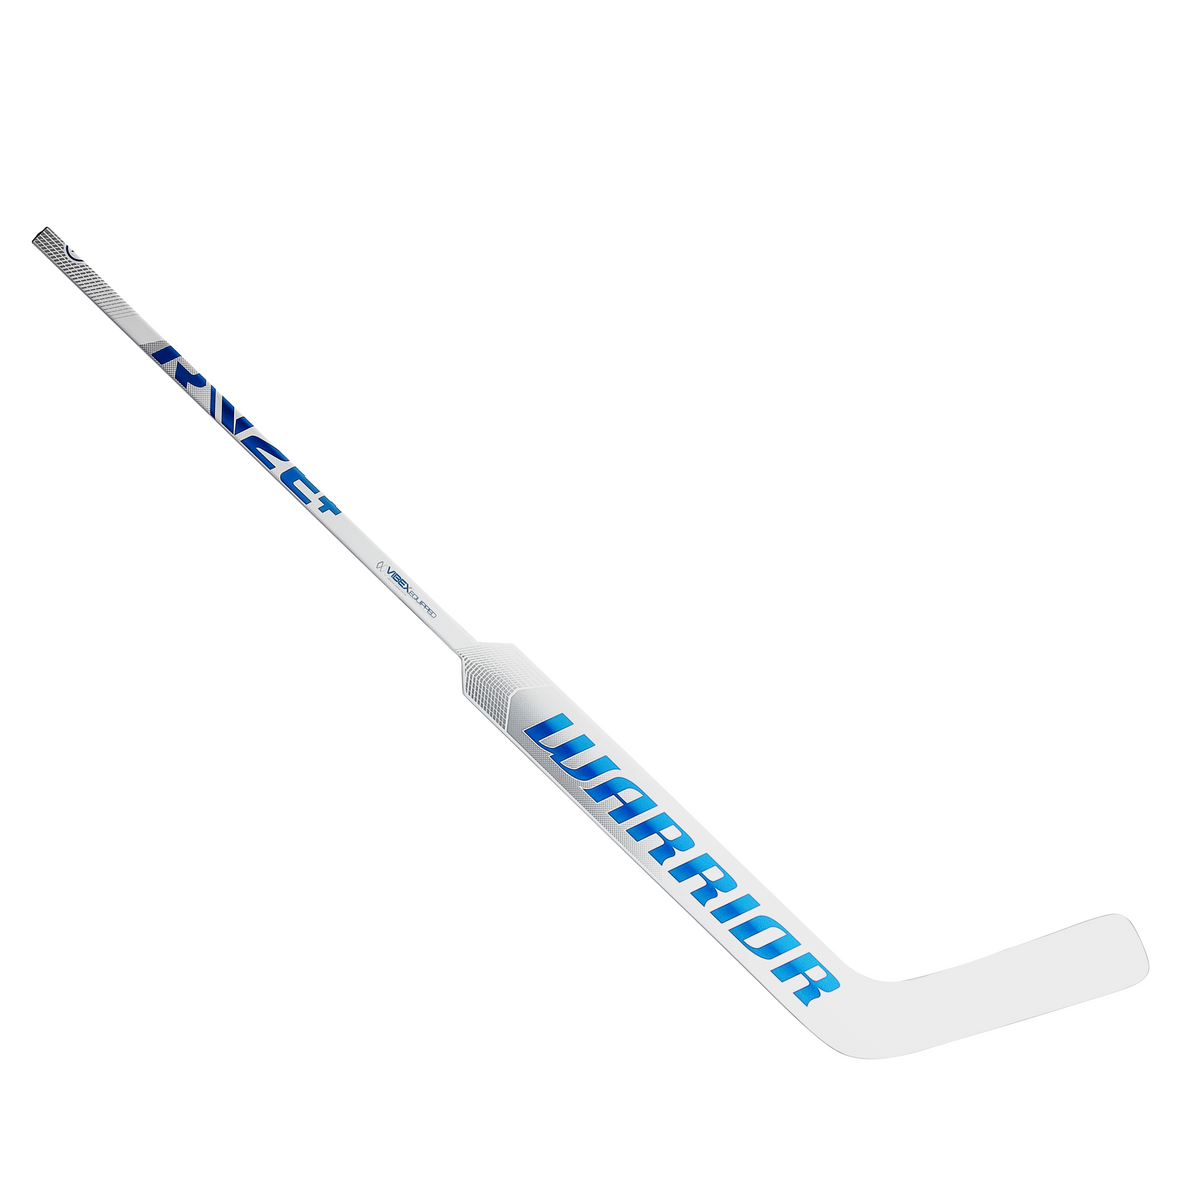 Warrior Ritual V2 E+ Intermediate Goalie Stick (White/Royal)